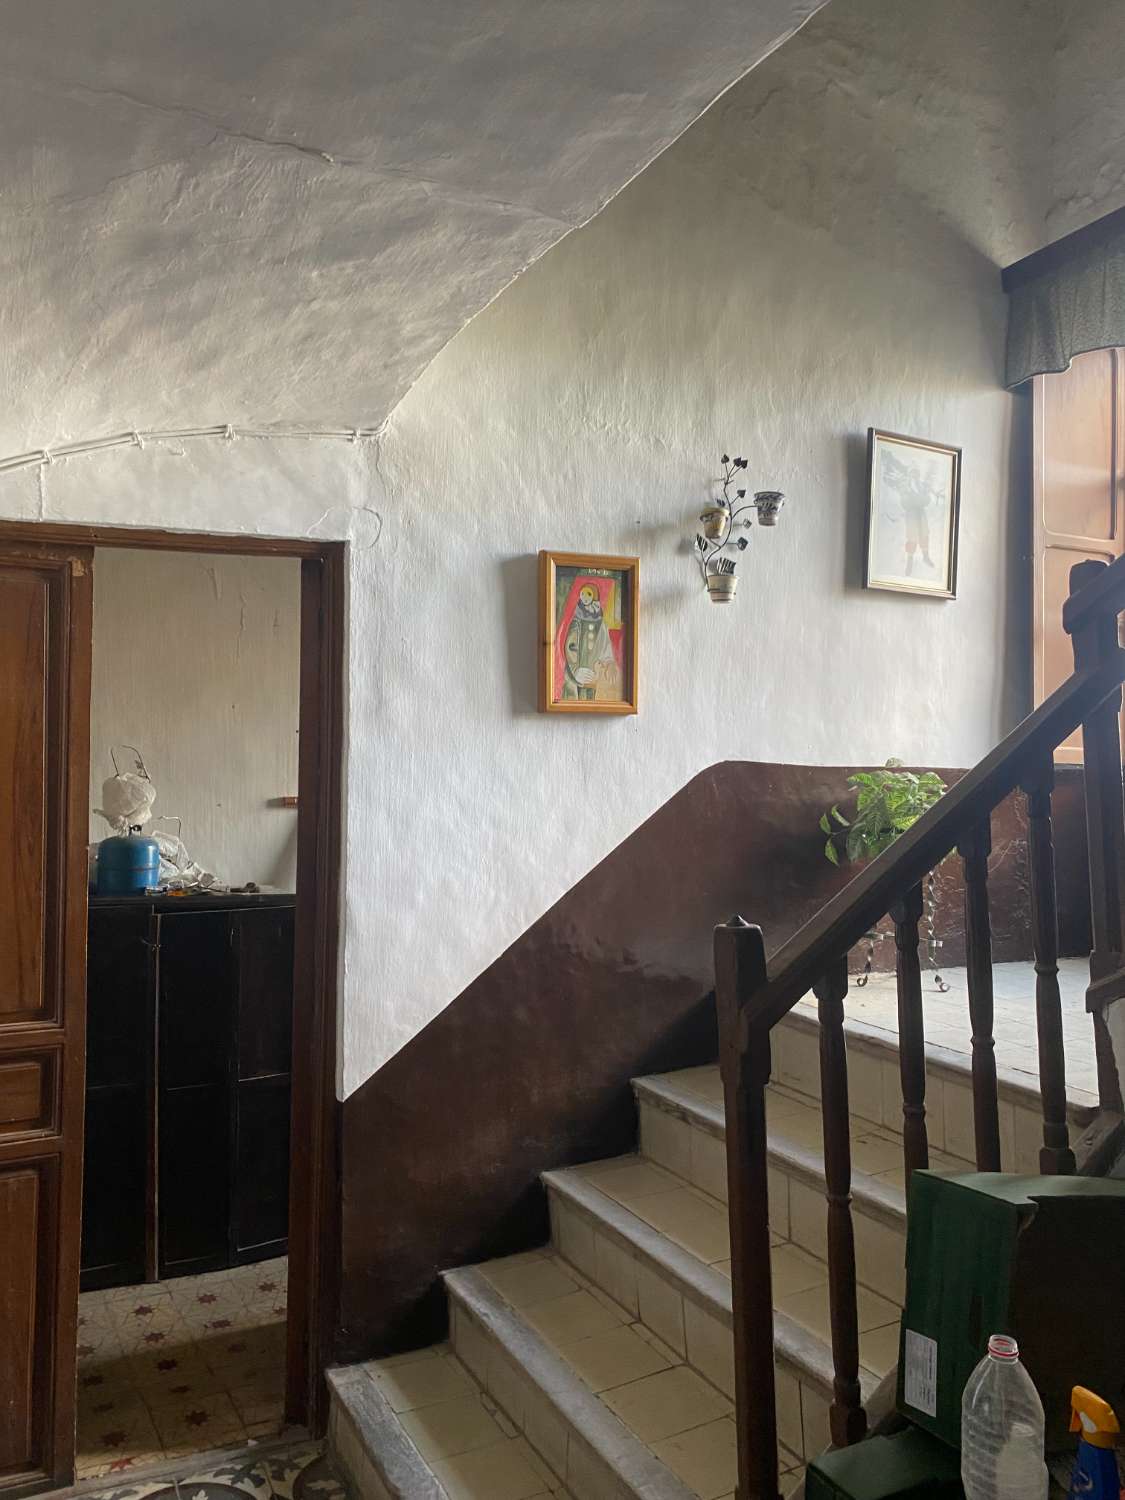 Casa de 9 dormitorios y 2 baños para reformar en Vélez-Rubio